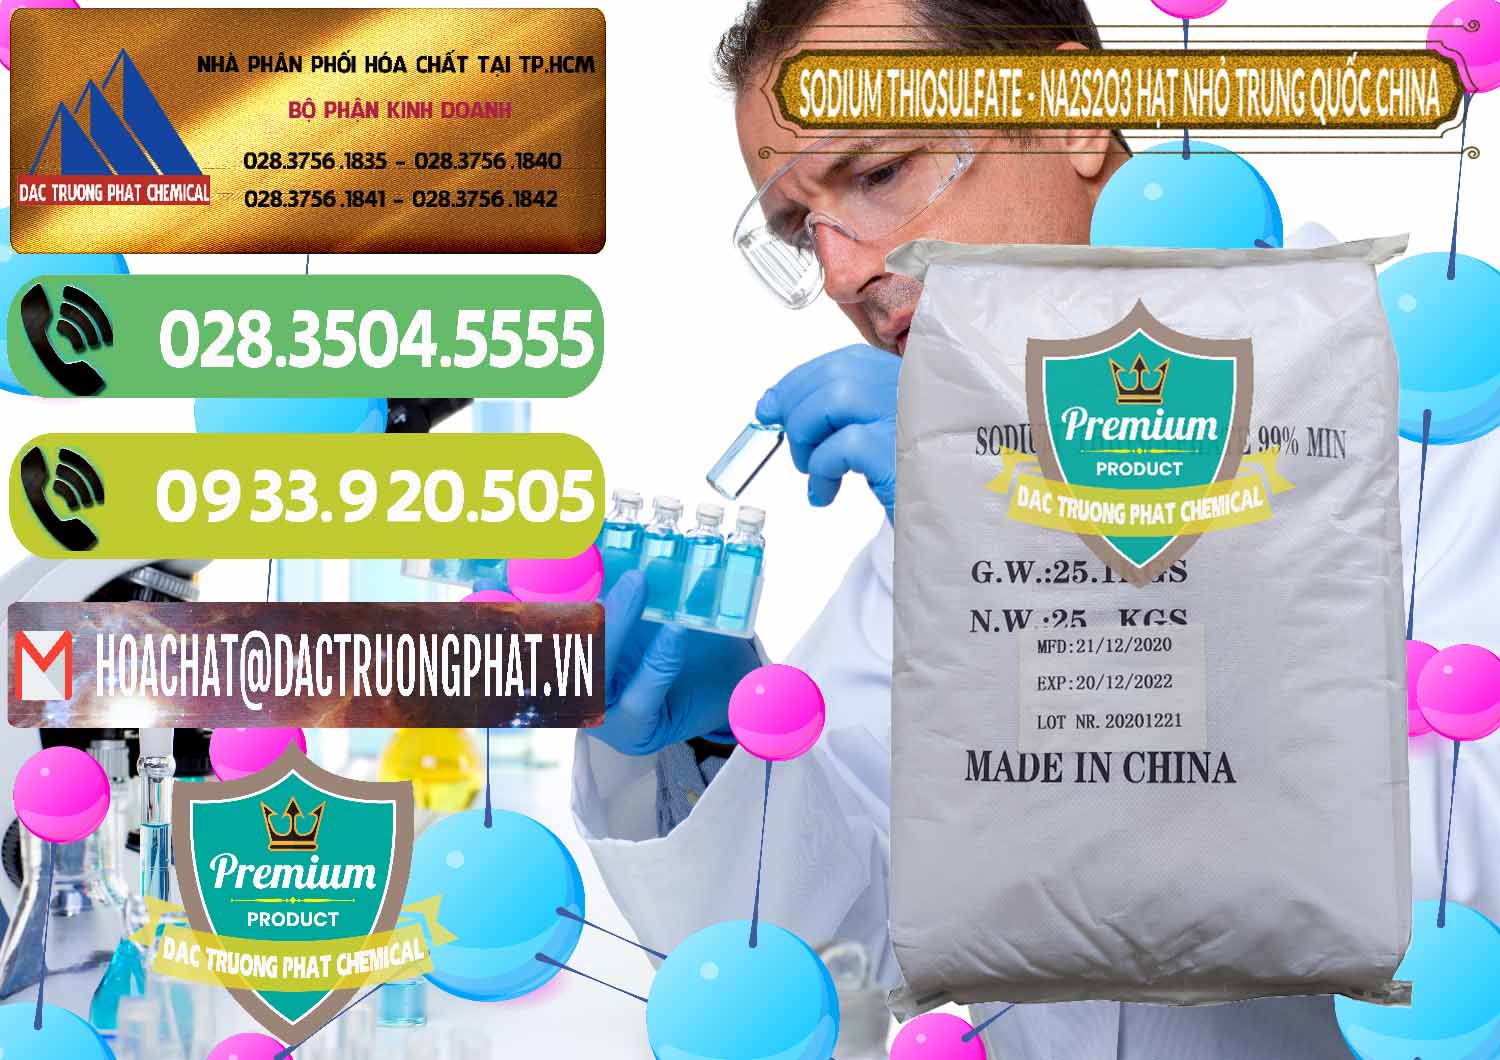 Công ty chuyên cung ứng ( bán ) Sodium Thiosulfate - NA2S2O3 Hạt Nhỏ Trung Quốc China - 0204 - Nơi chuyên nhập khẩu và cung cấp hóa chất tại TP.HCM - hoachatmientay.vn